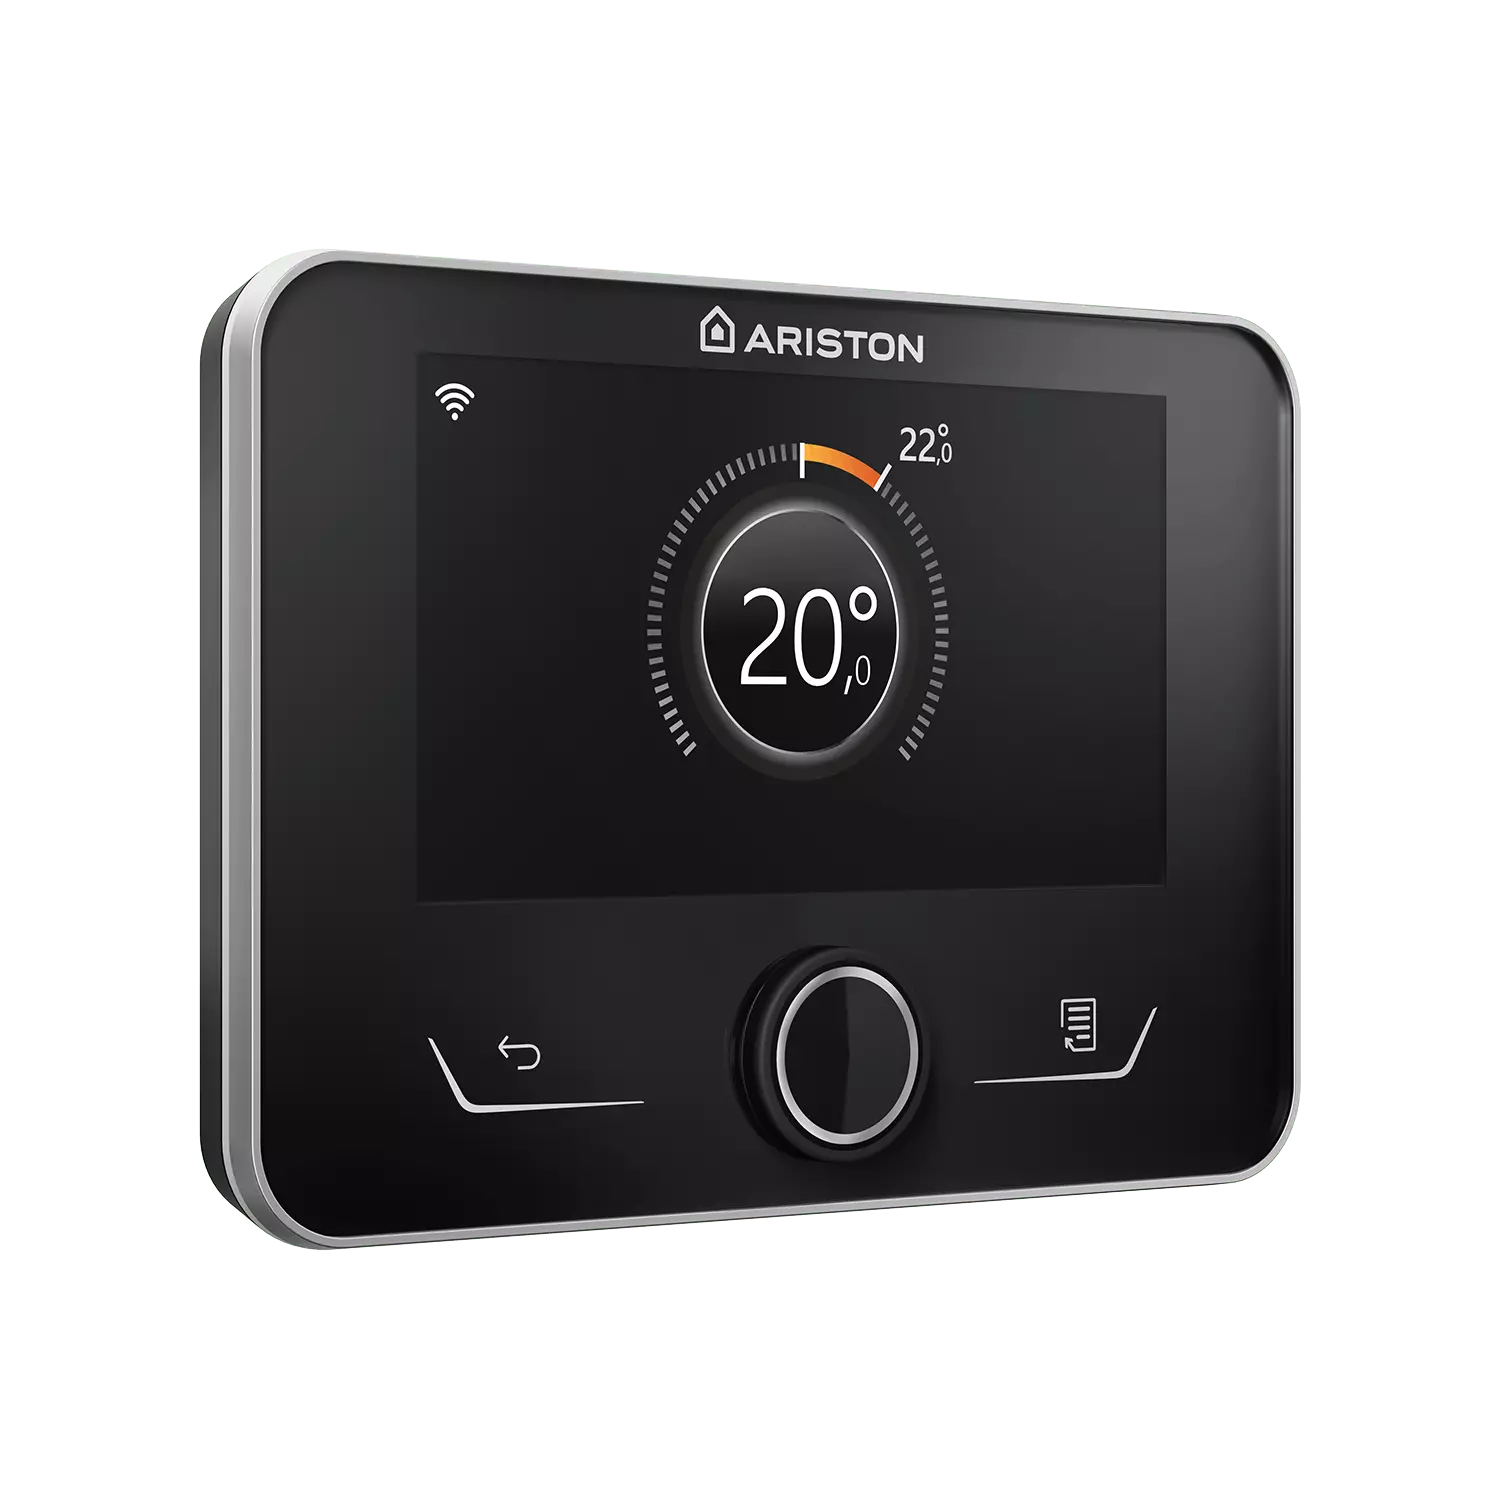 Ariston net. Аристон net купить. Z20net termostat. Термодатчики Аристон устройство цена.